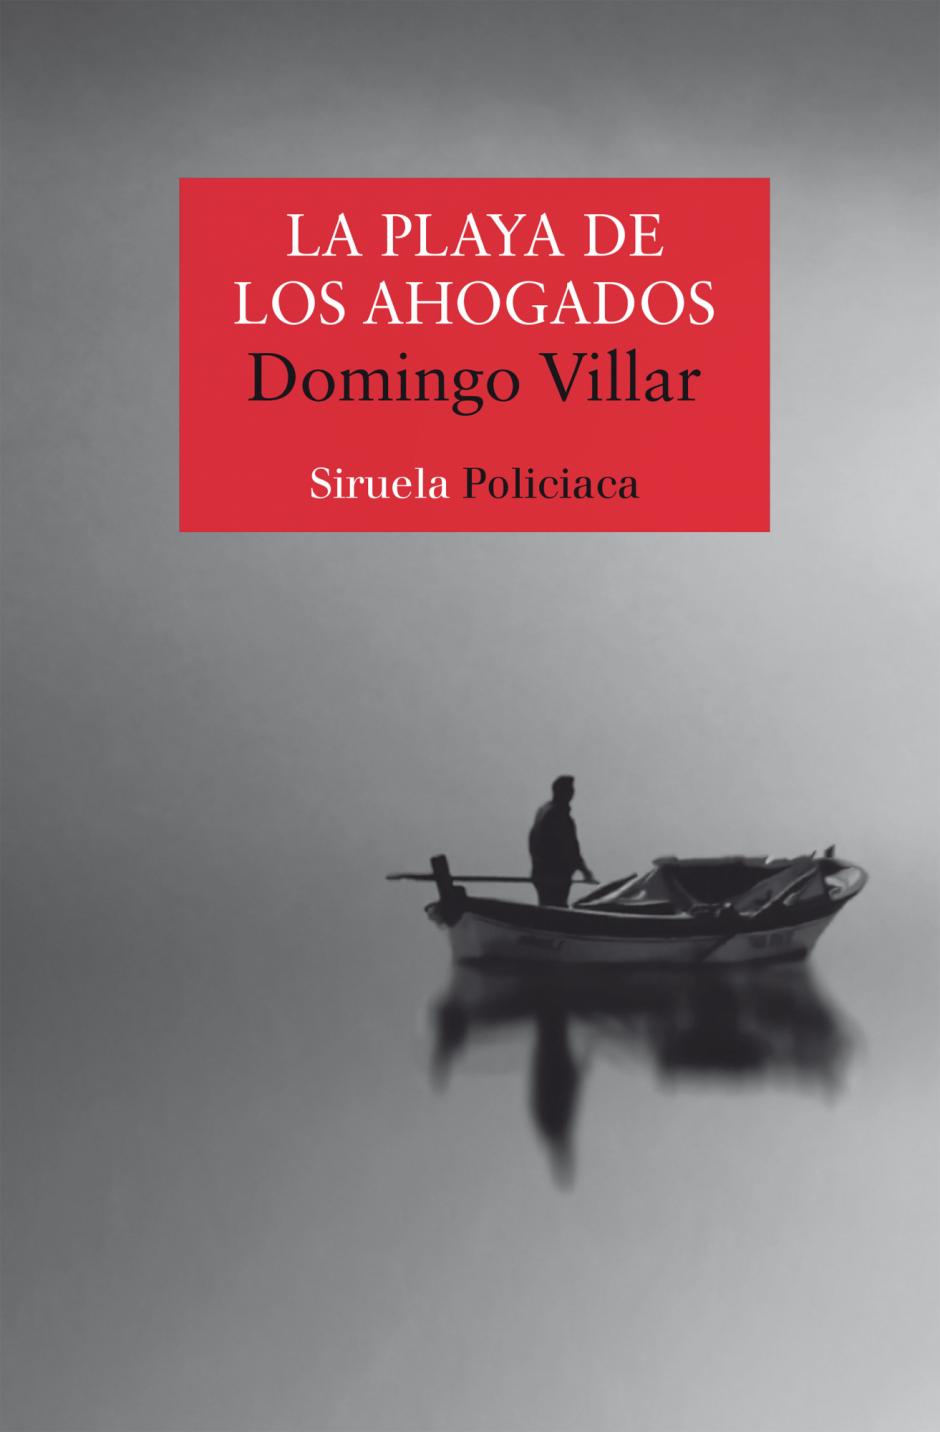 La playa de los ahogado, uno de lso grandes éxitos de Domingo Villar